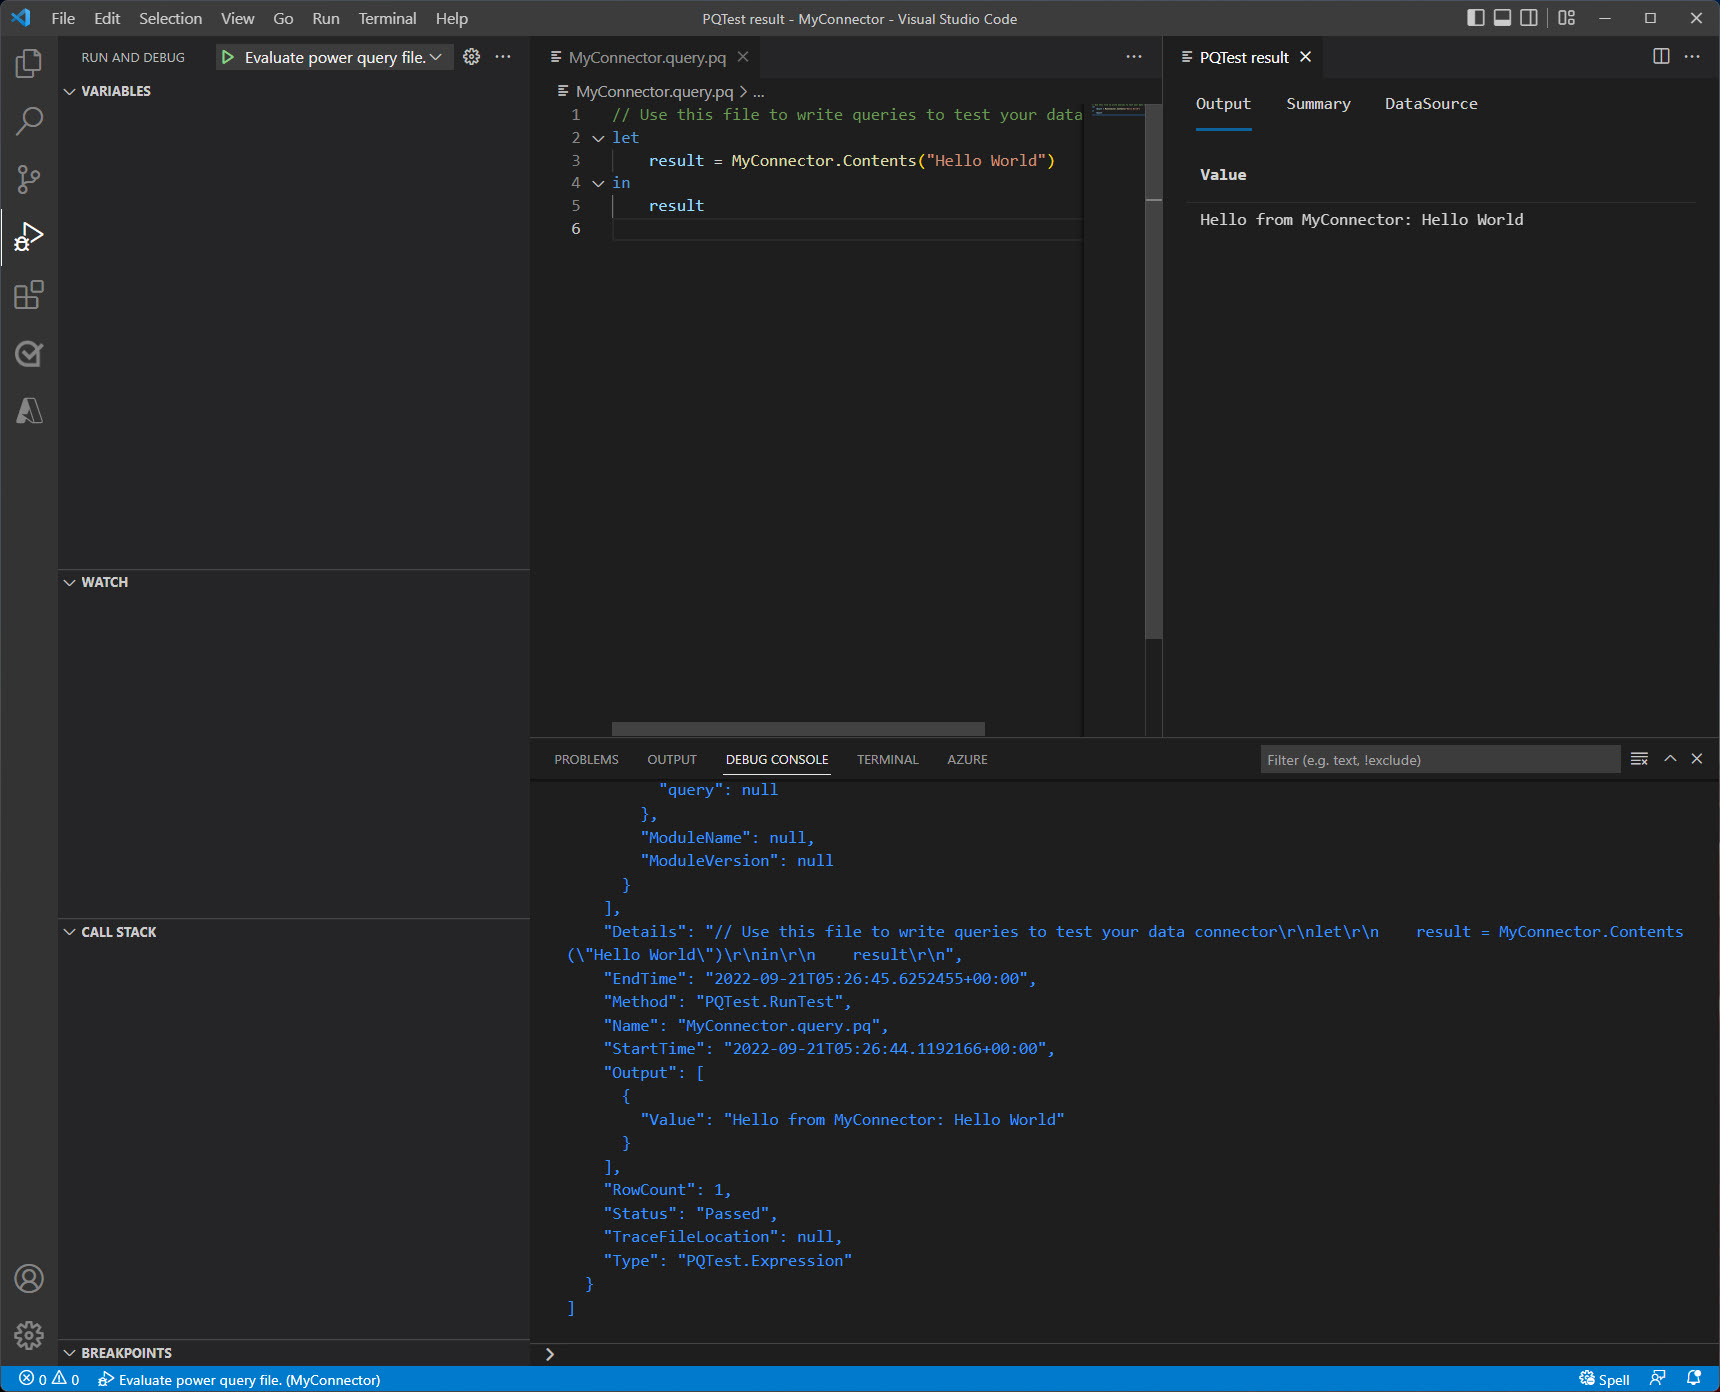 A janela Código do Visual Studio após a avaliação foi finalizada mostrando a saída no console e no painel de resultados.